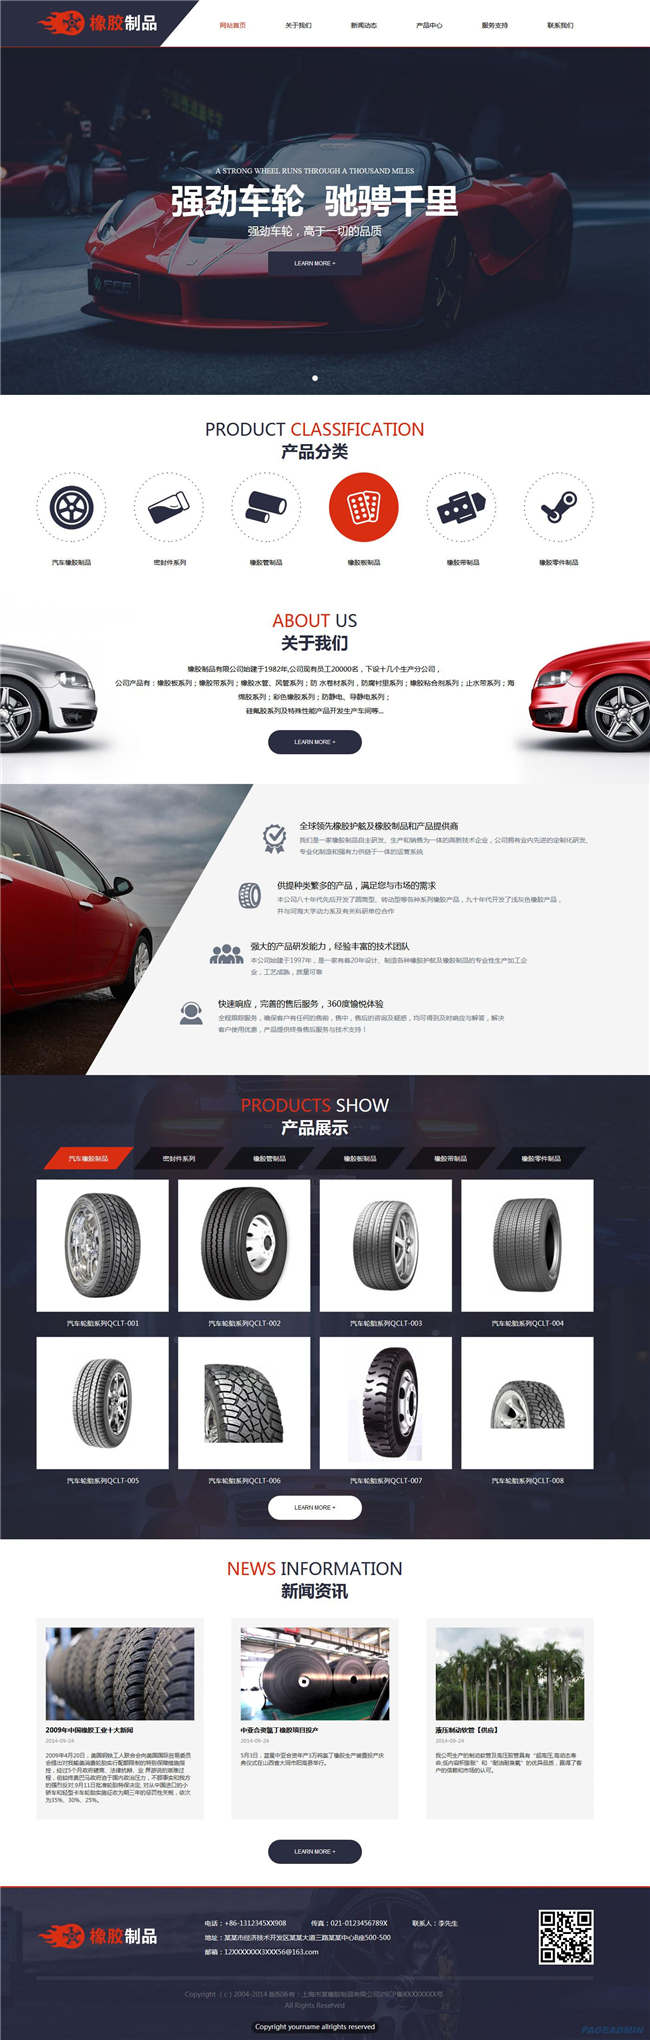 橡胶制品建材冶金橡胶塑料轮胎网站WP整站模板(含手机版)预览图